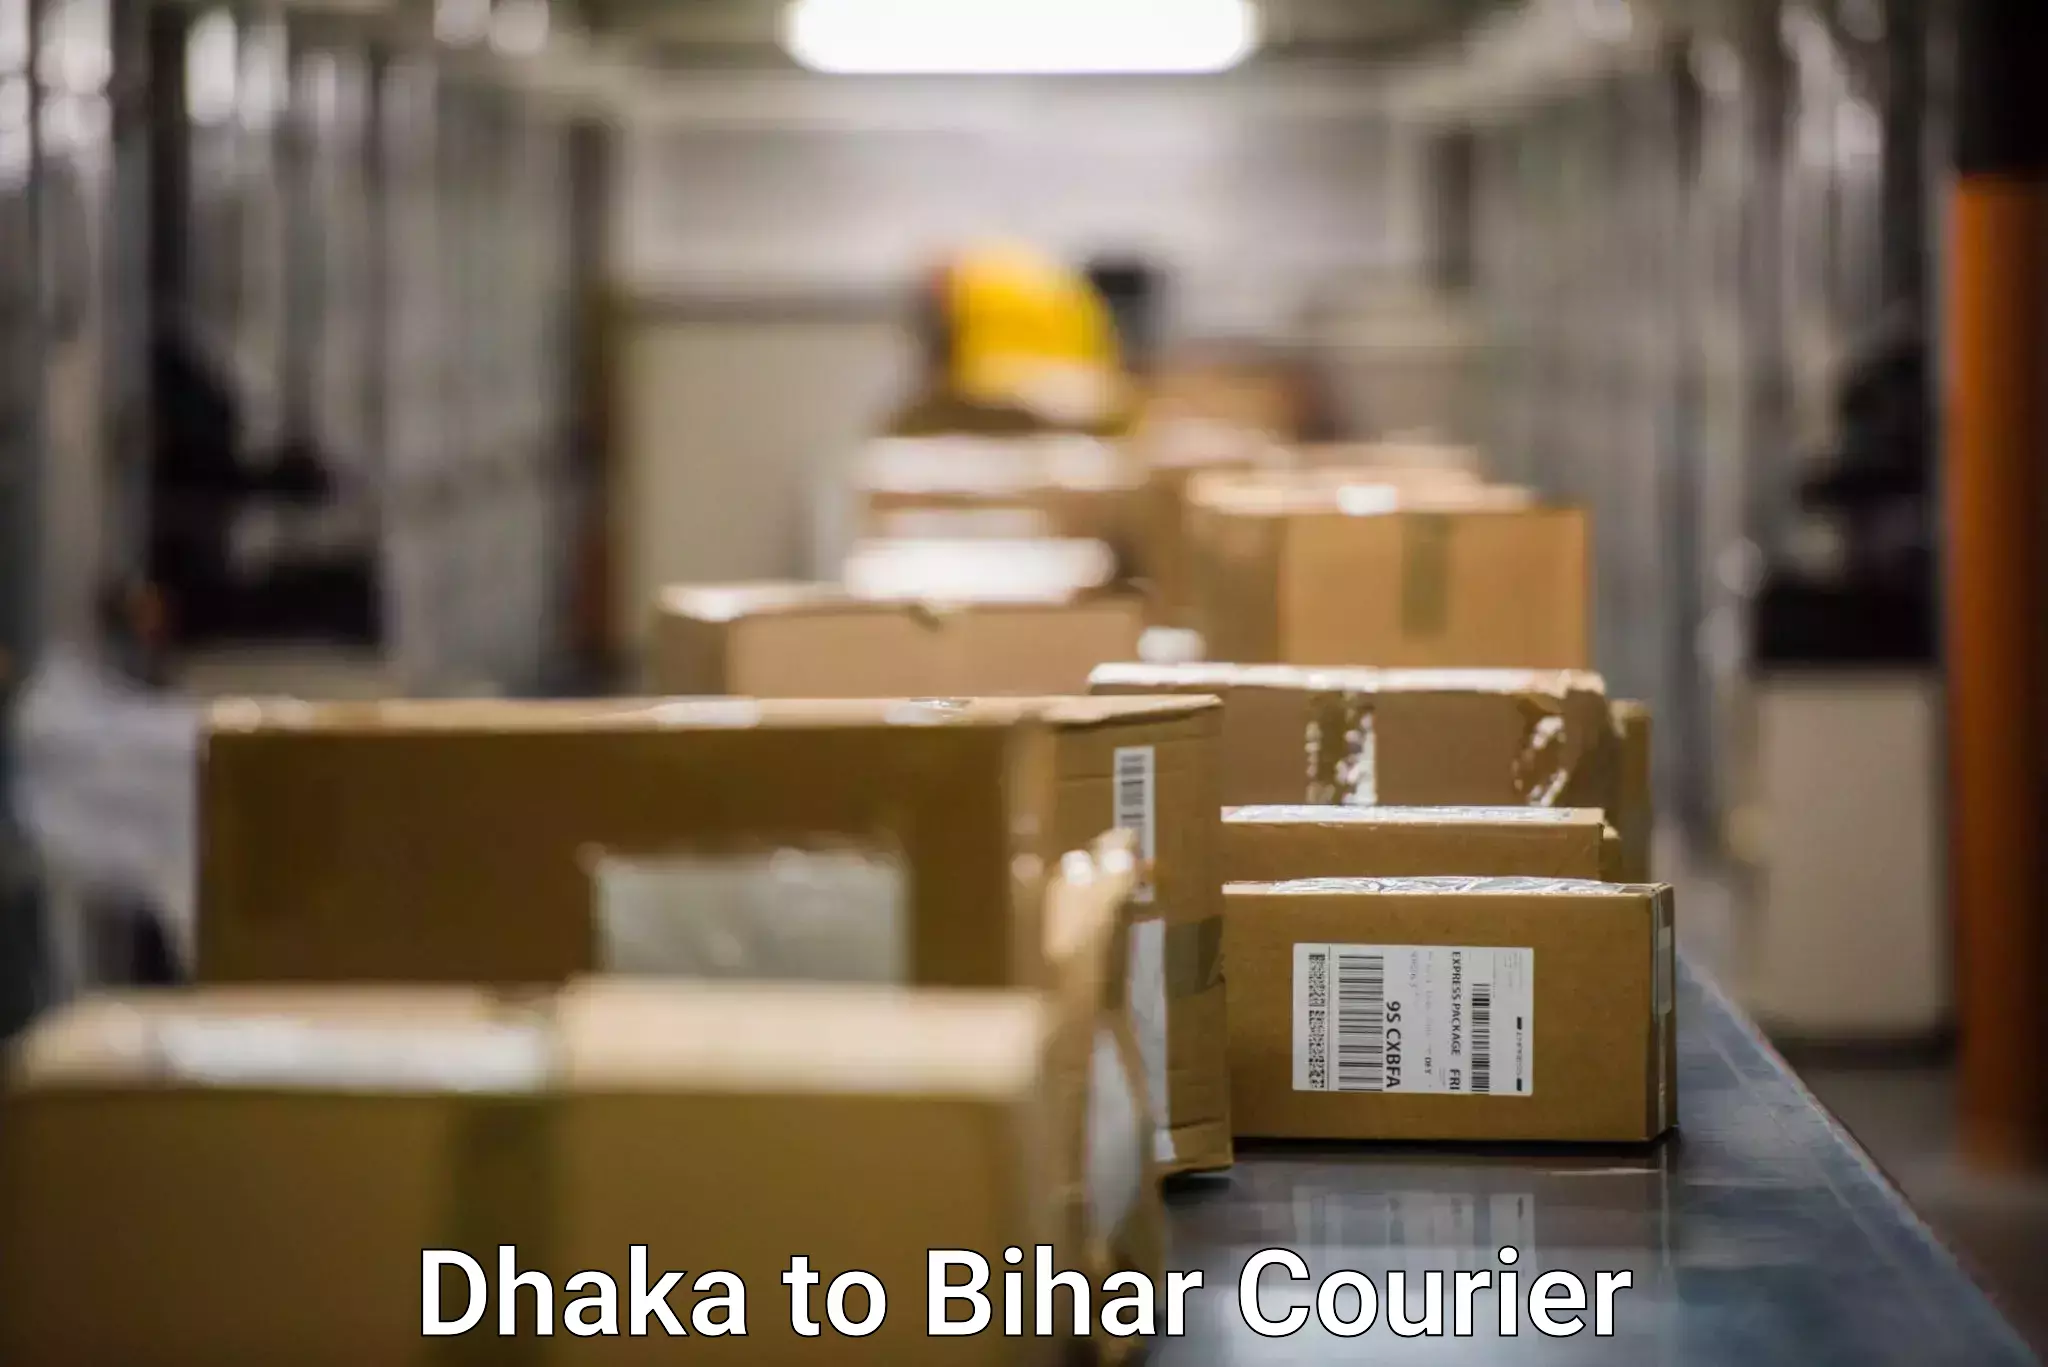 Bulk shipping discounts in Dhaka to Dighwara